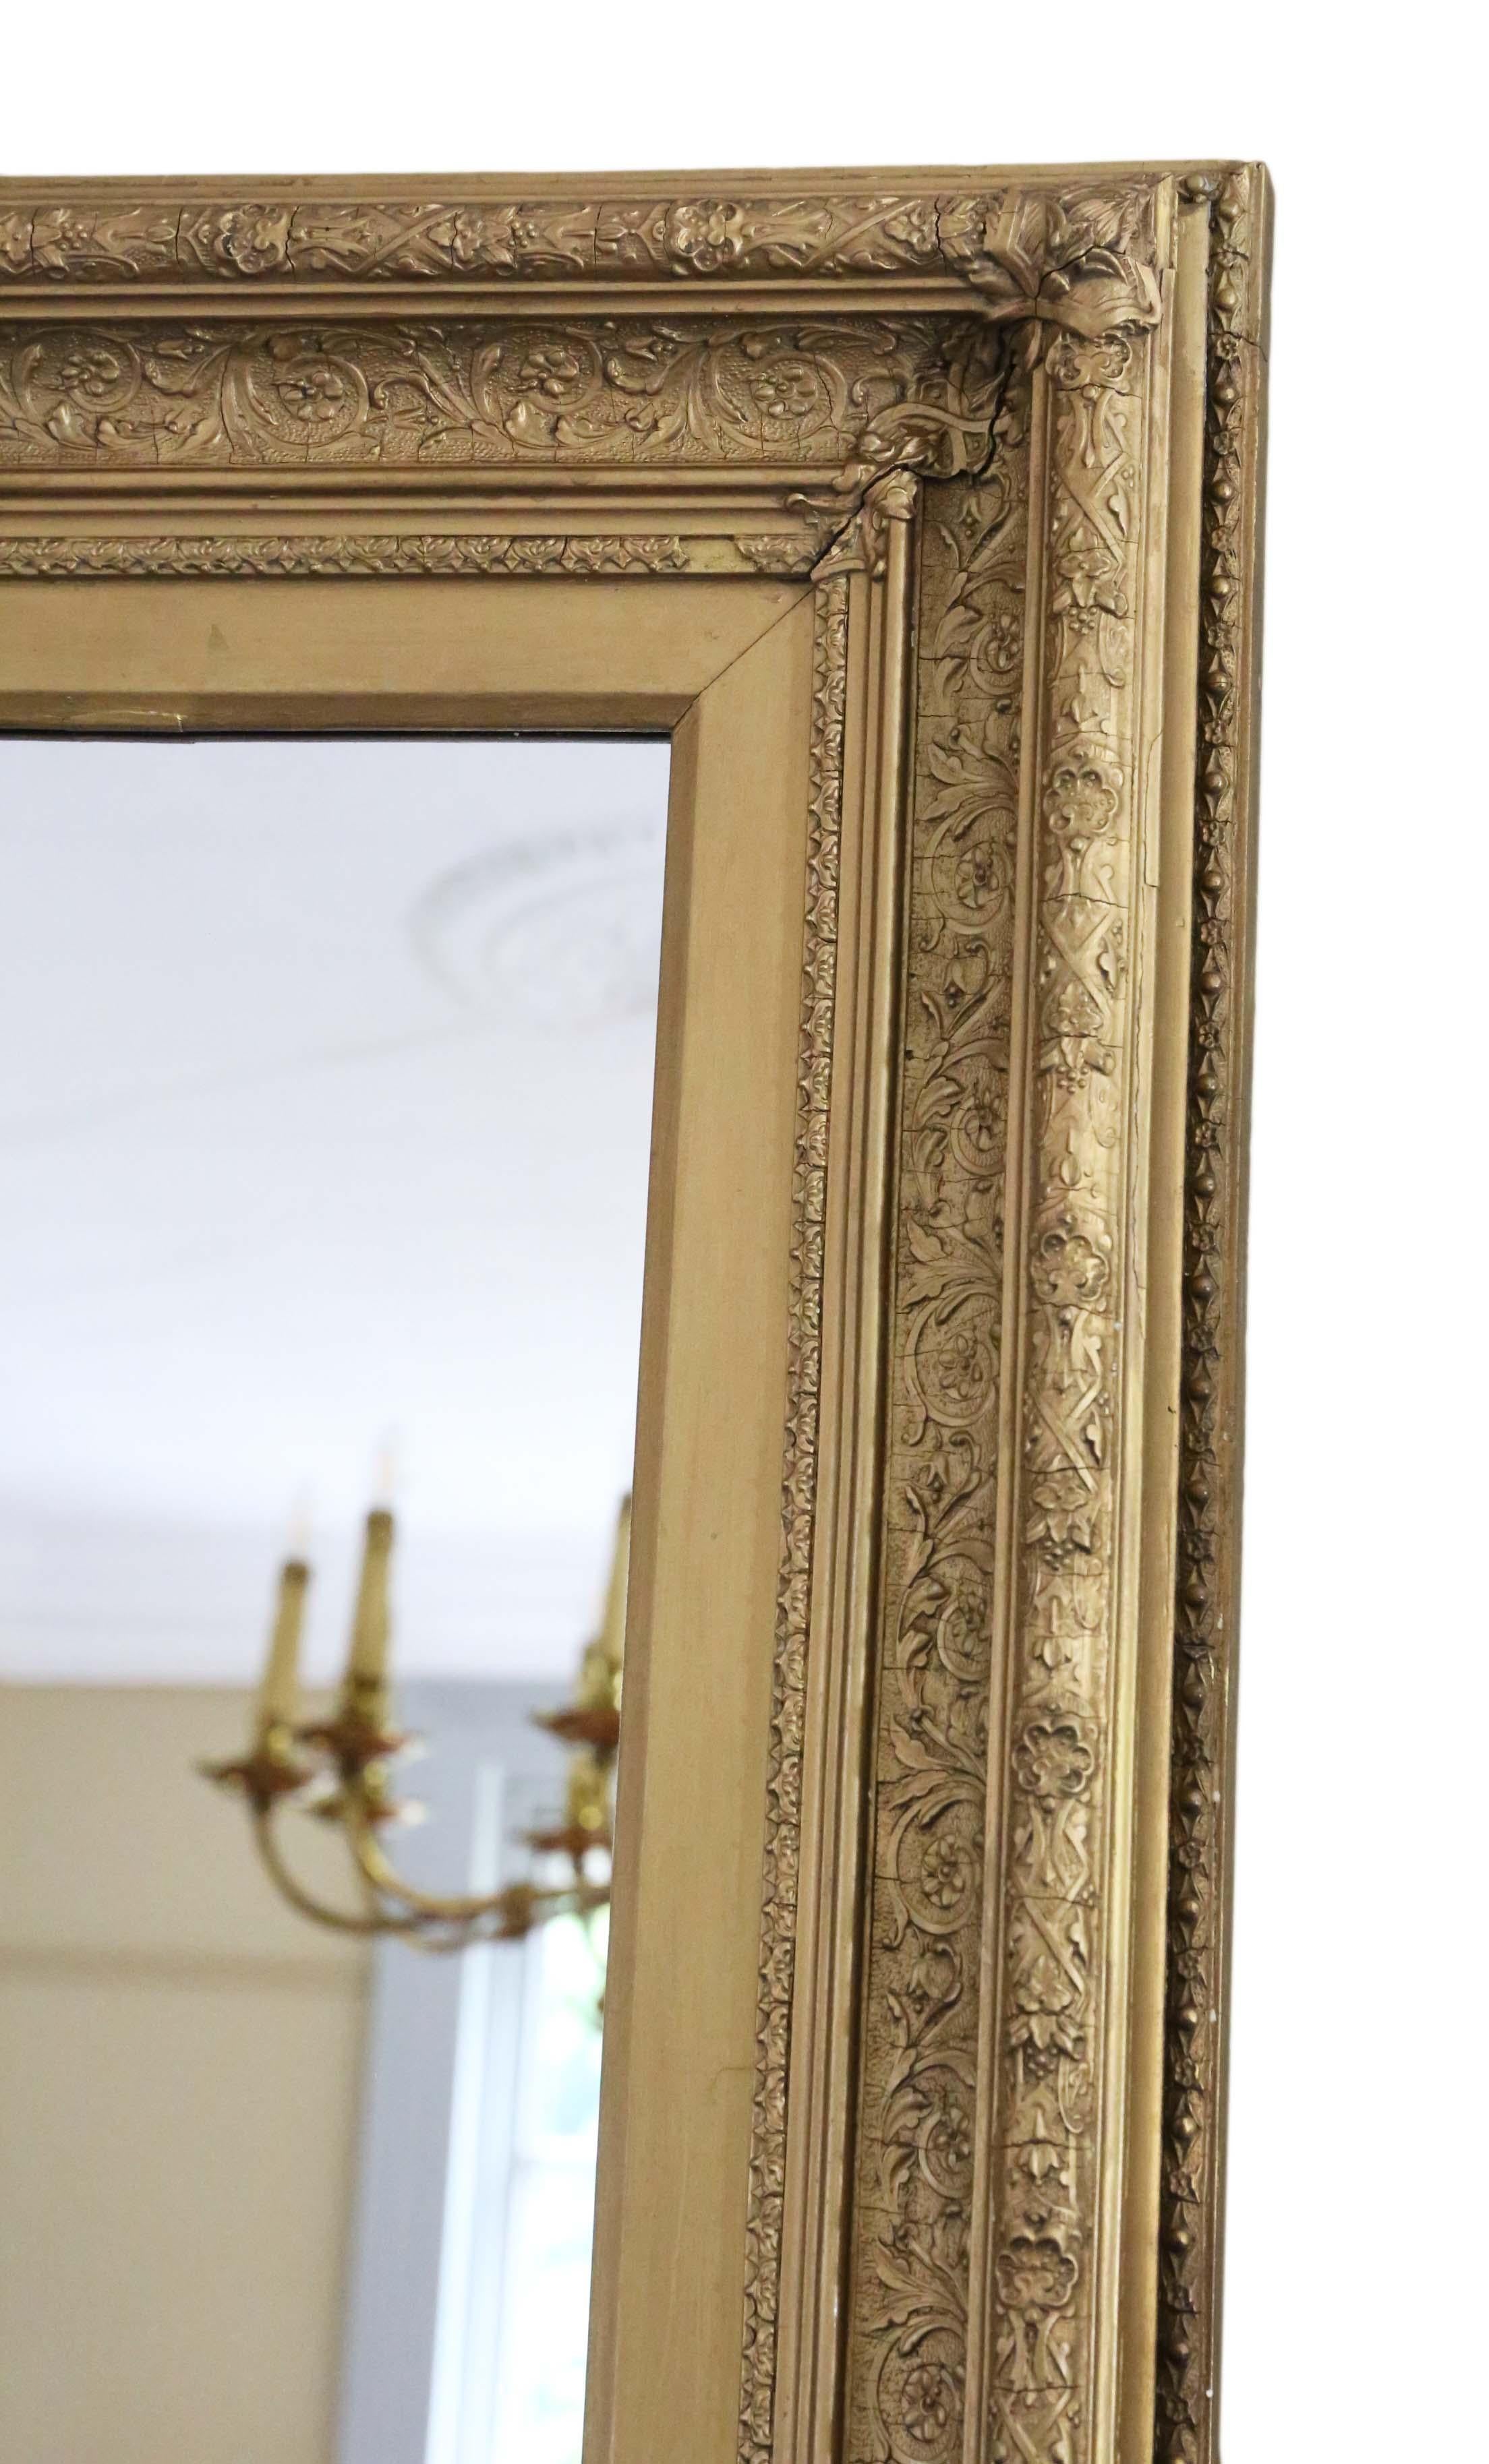 Antiker vergoldeter Wandspiegel von hoher Qualität aus dem 19. Jahrhundert. Reizvolle Einfachheit, Charme und Eleganz. Kann im Hoch- oder Querformat aufgehängt werden.

Ein beeindruckender Fund, der an der richtigen Stelle fantastisch aussehen